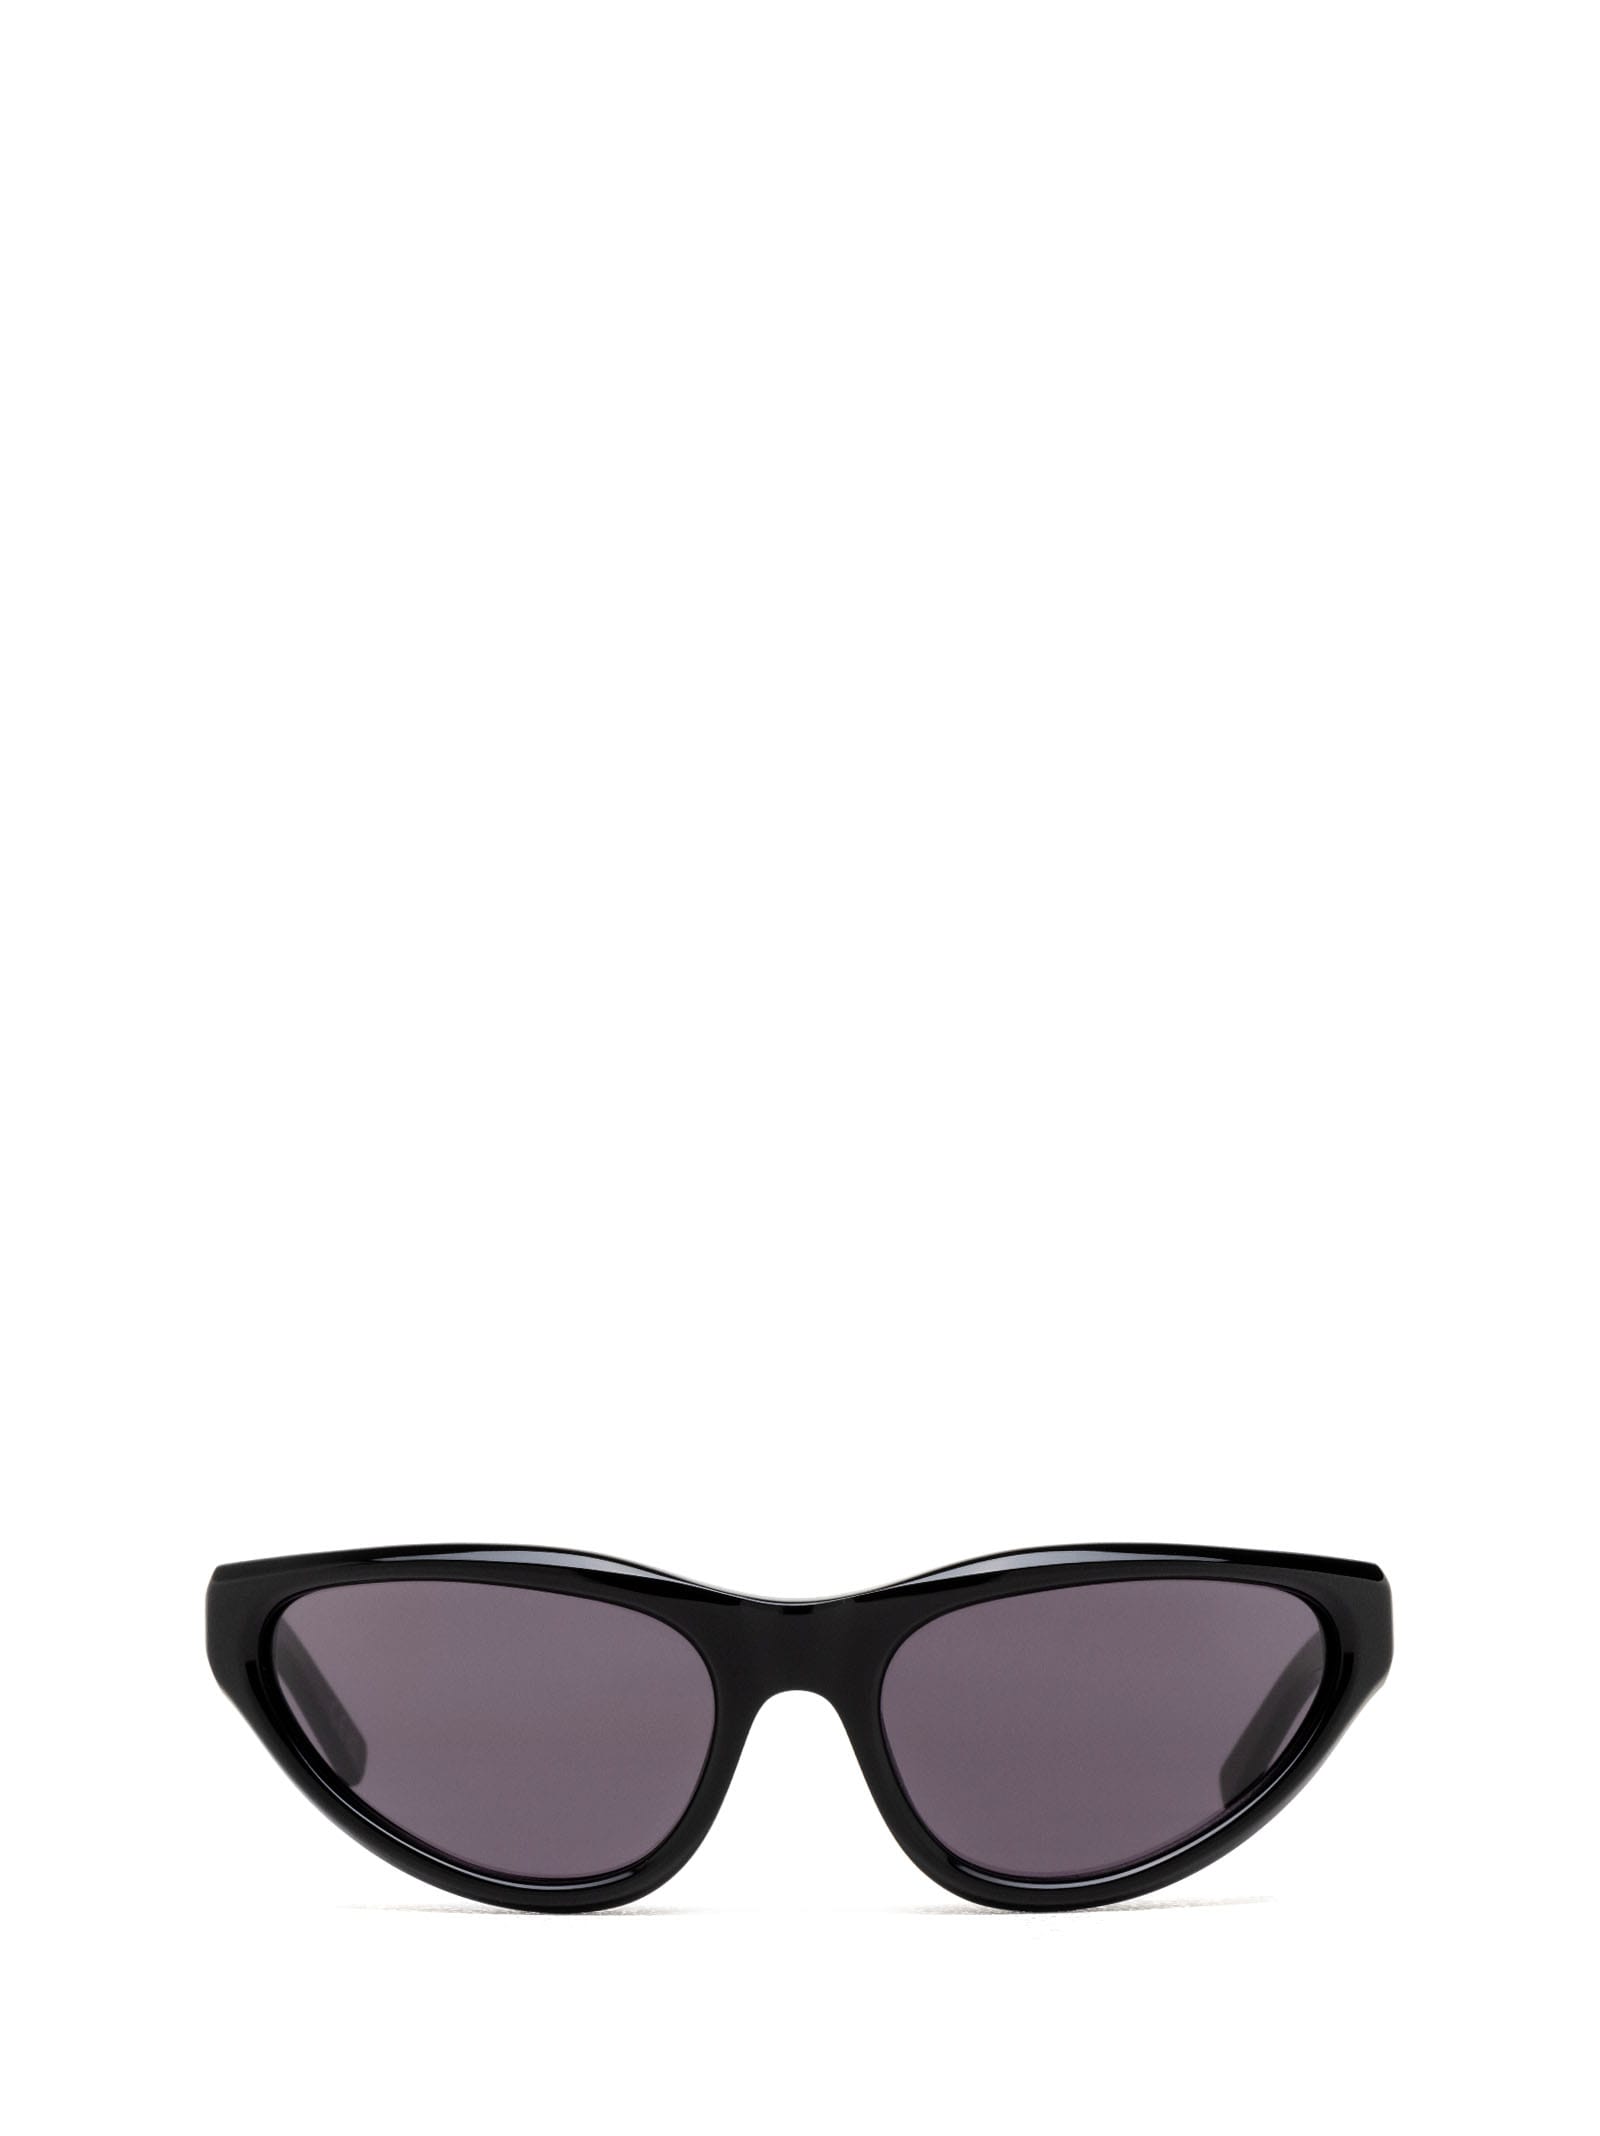 Mavericks Black Sunglasses